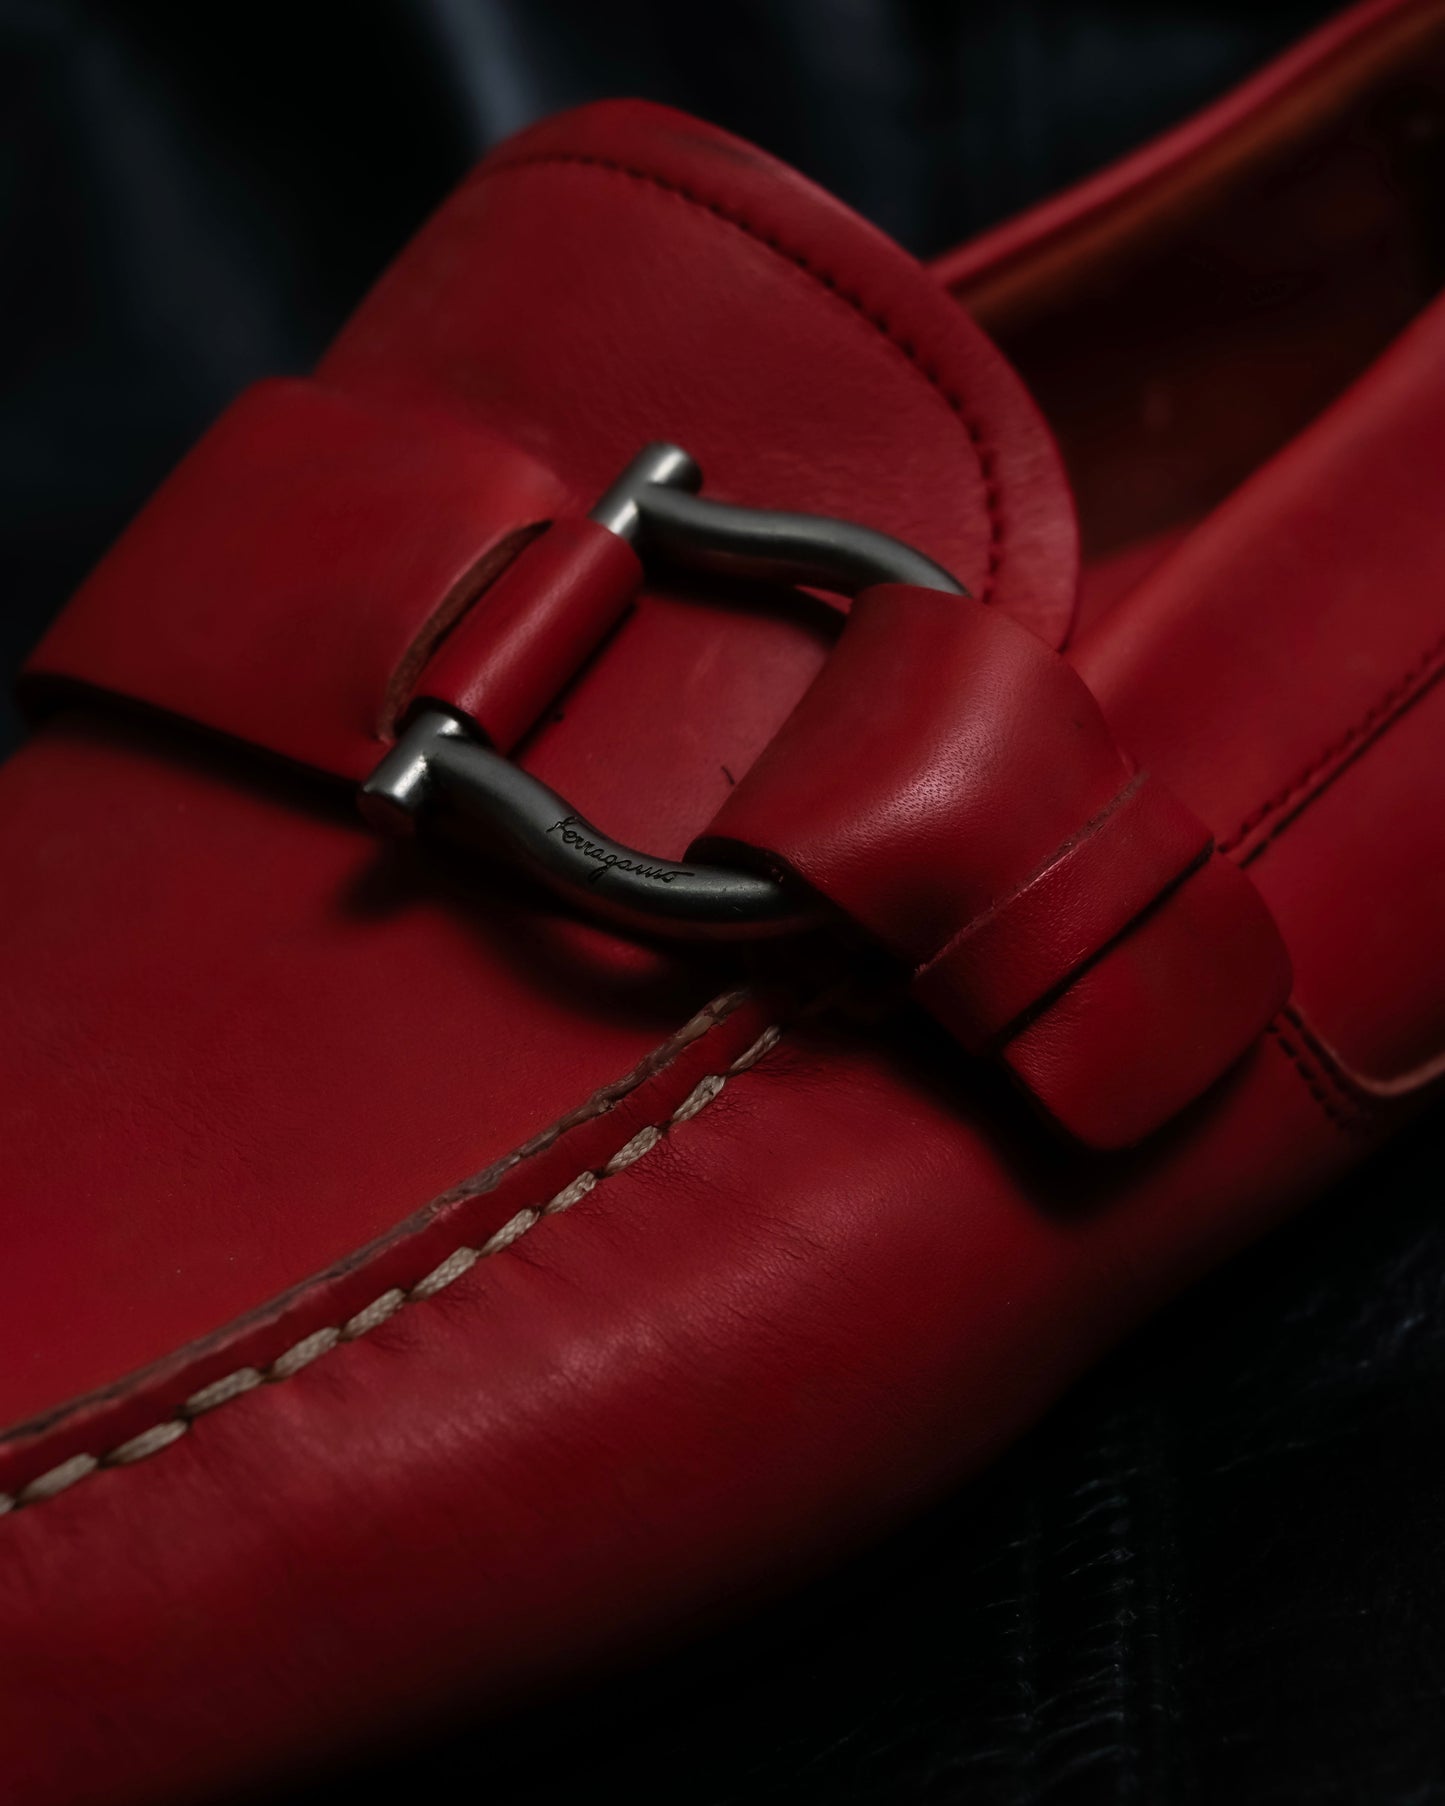 “Salvatore Ferragamo” gancino designed rubber sole loafer